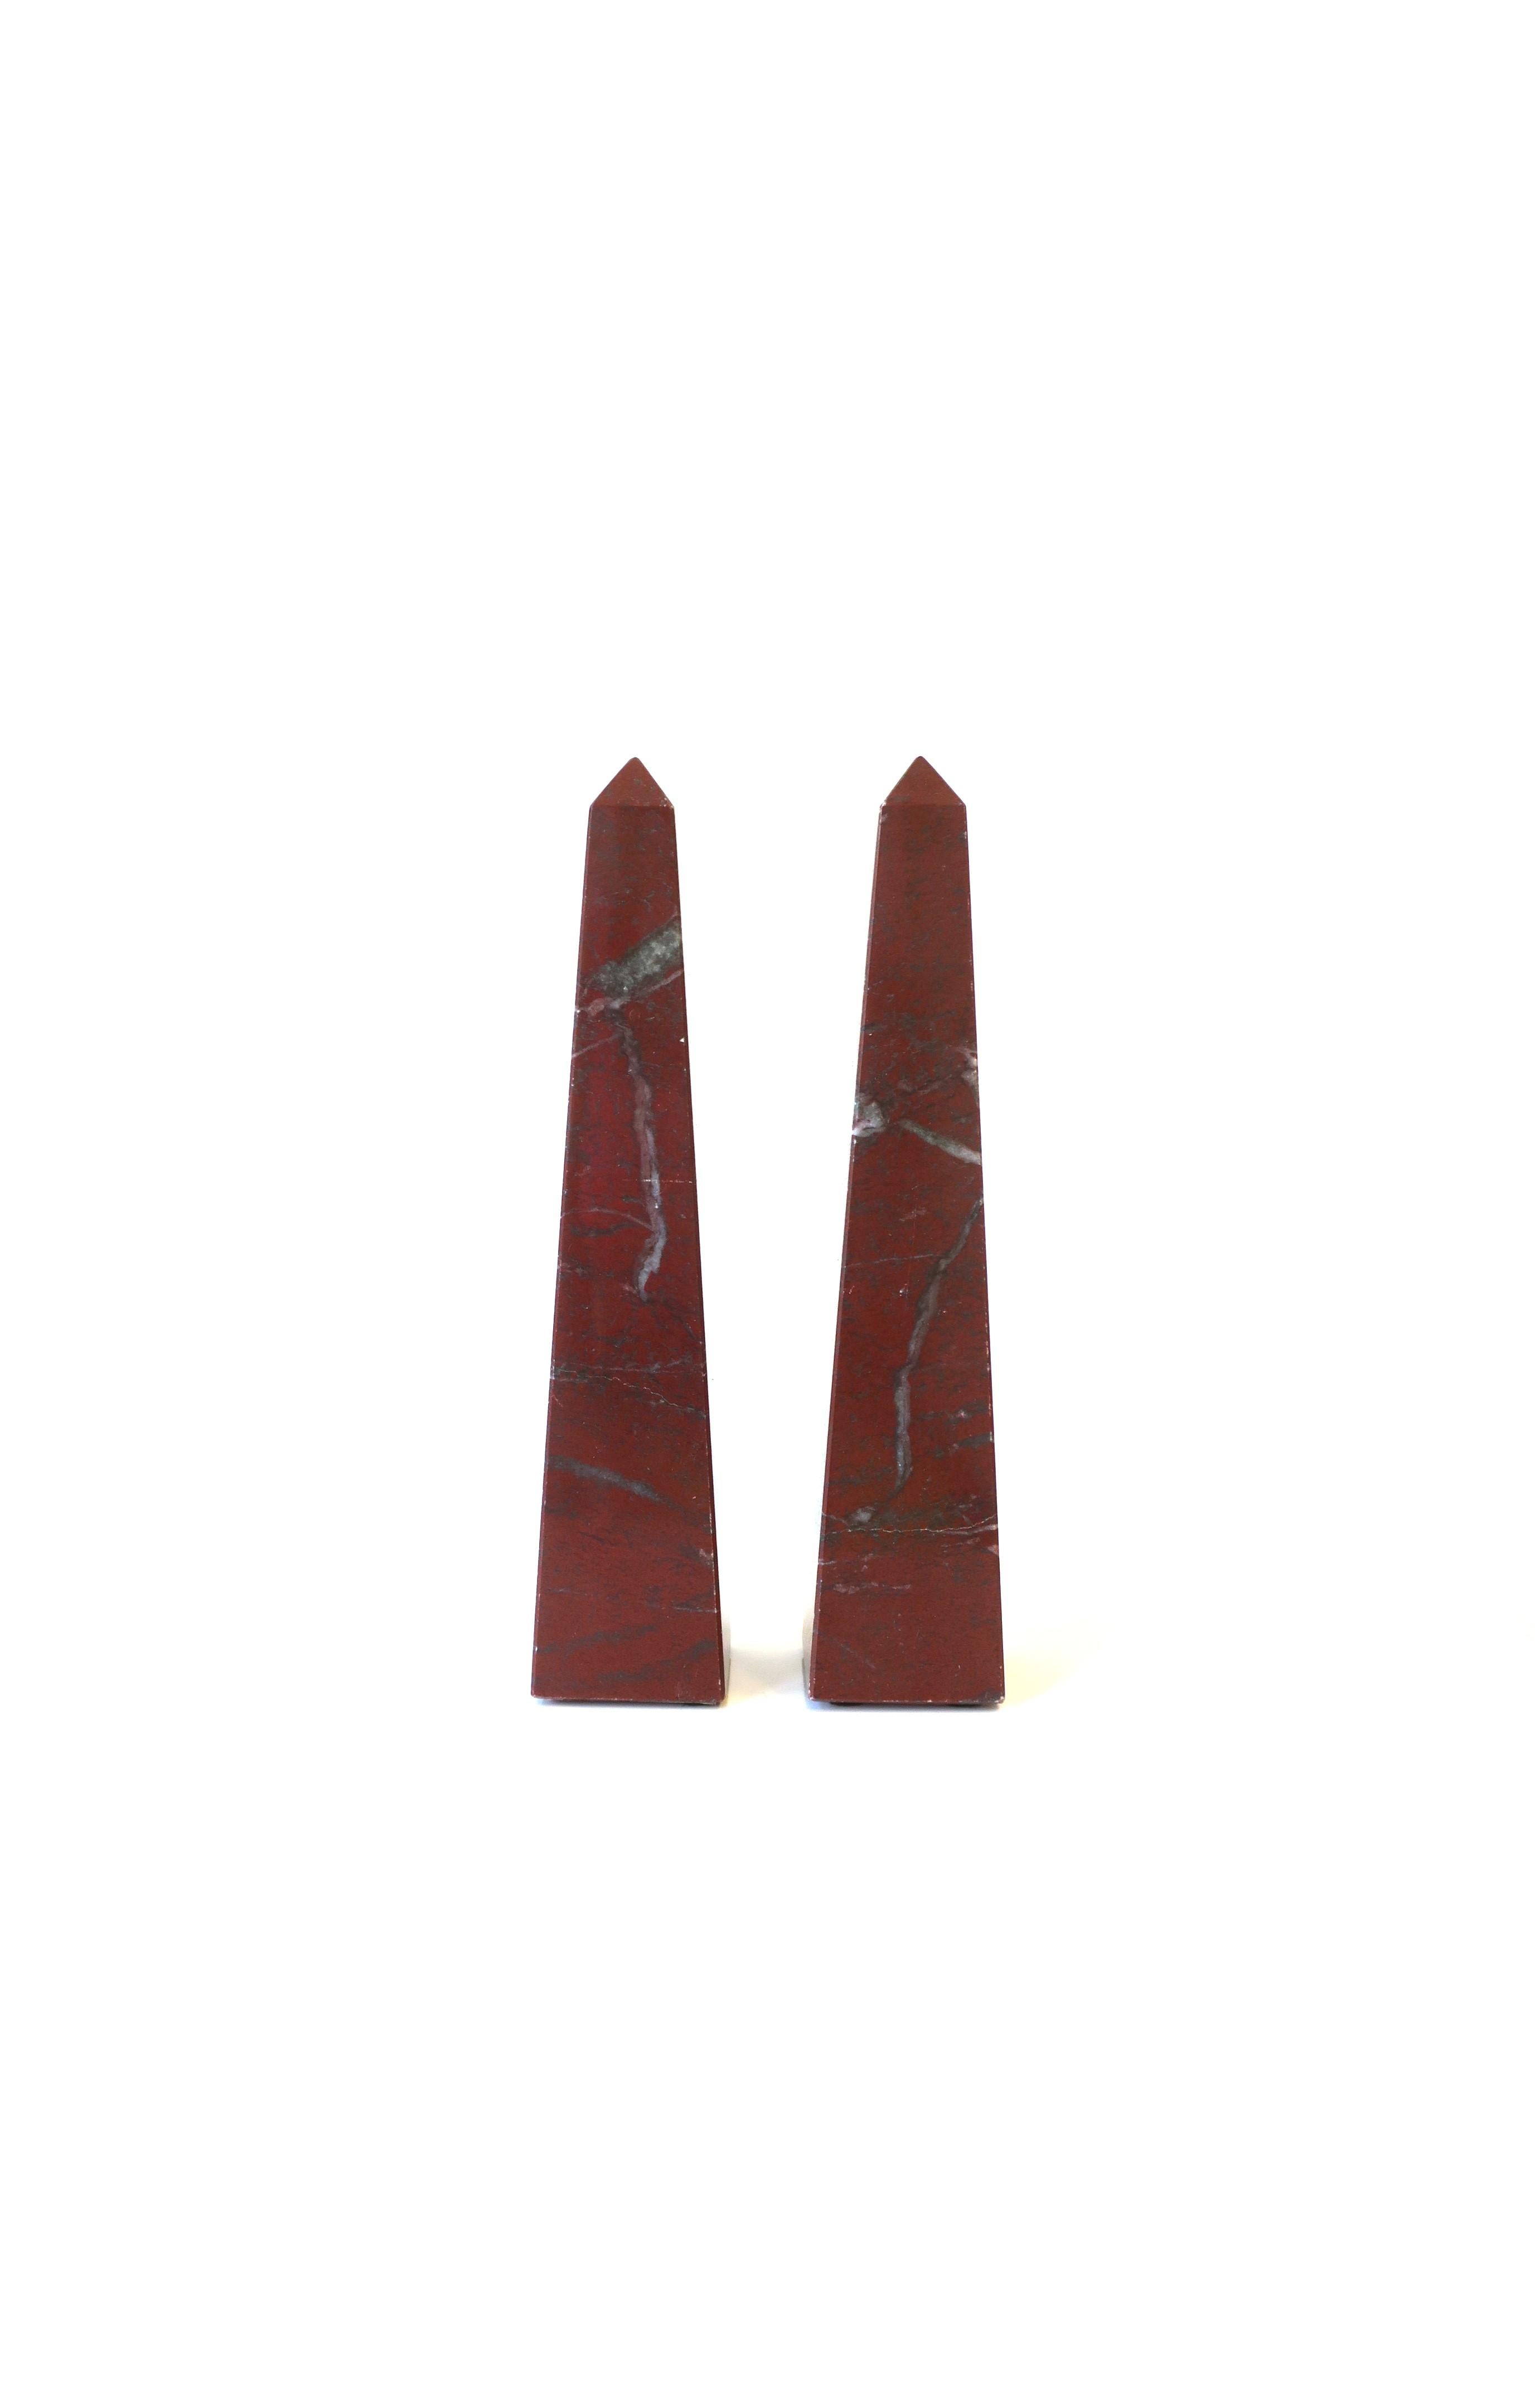 Une belle paire d'obélisques en marbre rouge bordeaux, circa 1970, Italie. Marbre rouge bordeaux massif, veiné de gris. Marqué sur le fond, 